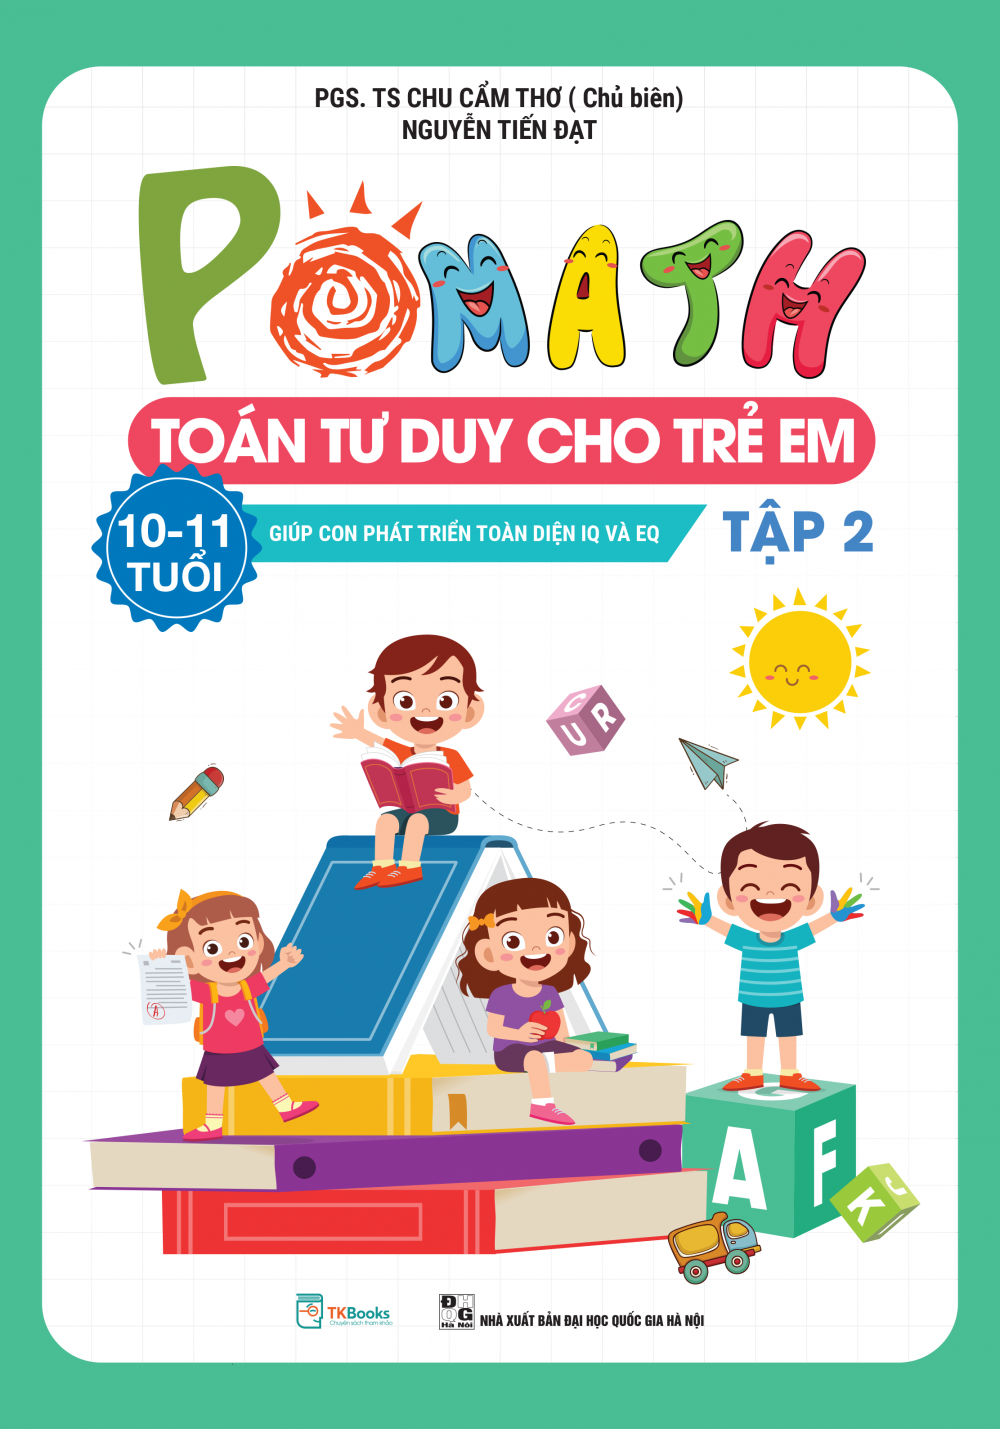 POMath – Toán tư duy cho trẻ em 10 – 11 tuổi - Tập 2